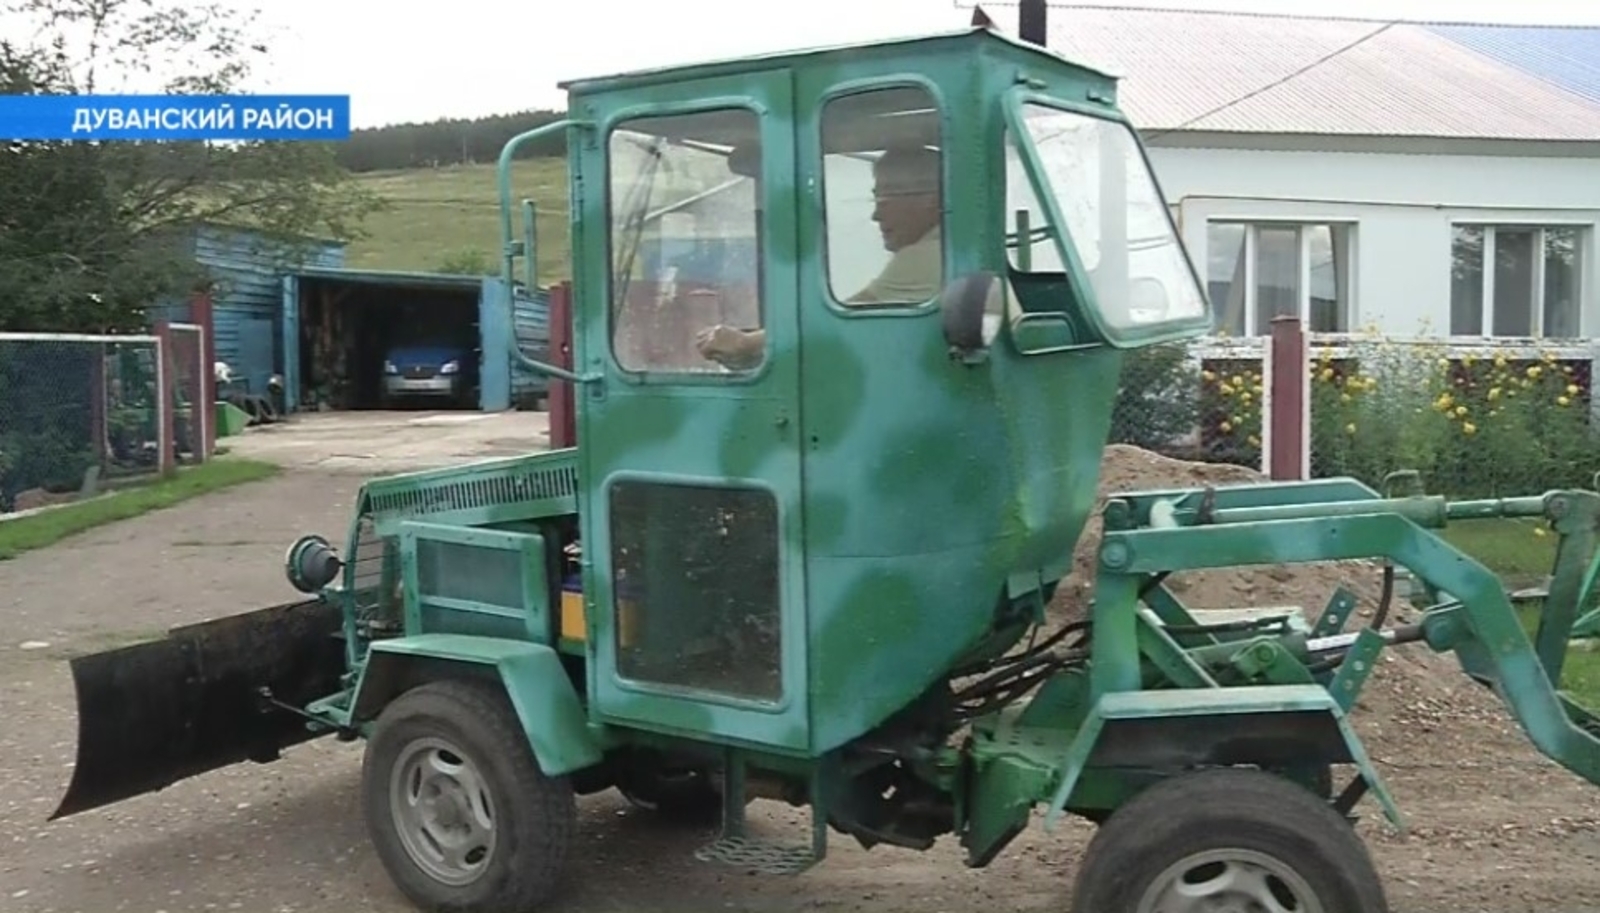 100 меңгә - мини-трактор